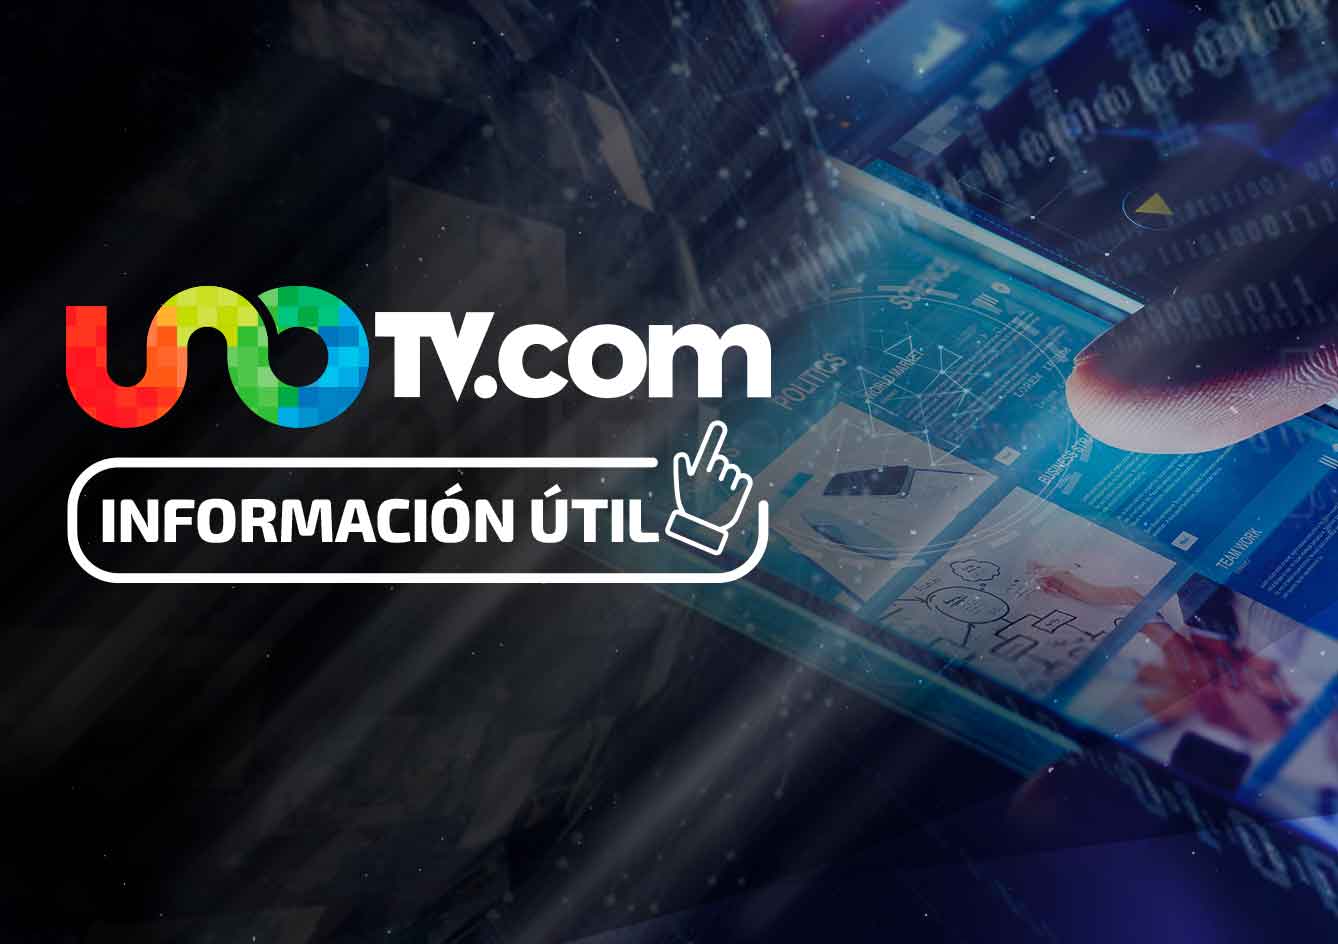 Landon Donovan debuta en la victoria del León sobre el Puebla